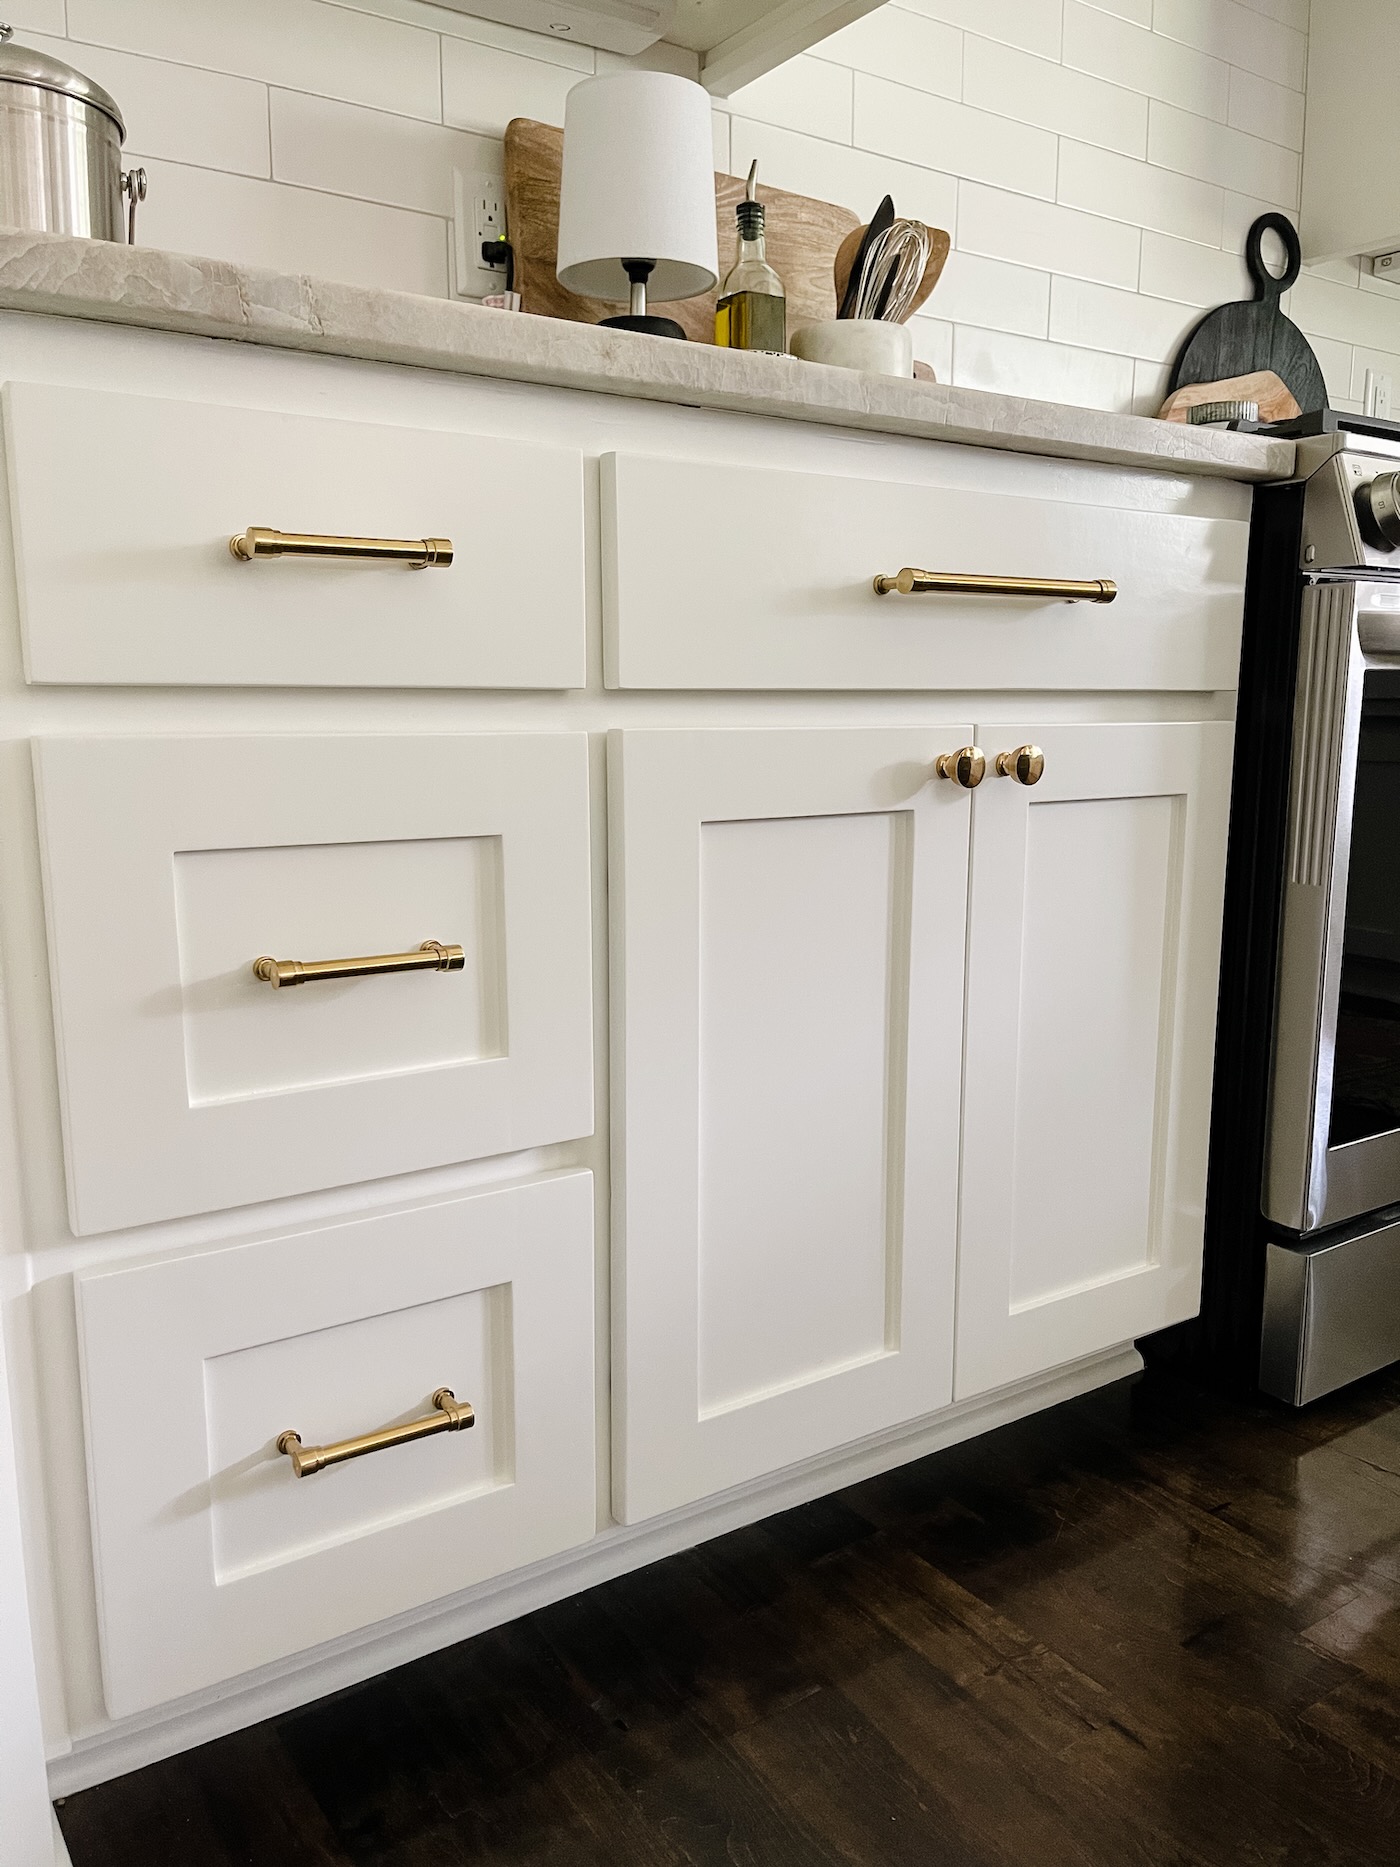 Brass Cabinet Hardware, Home Decor, Brass Hardware Kitchen